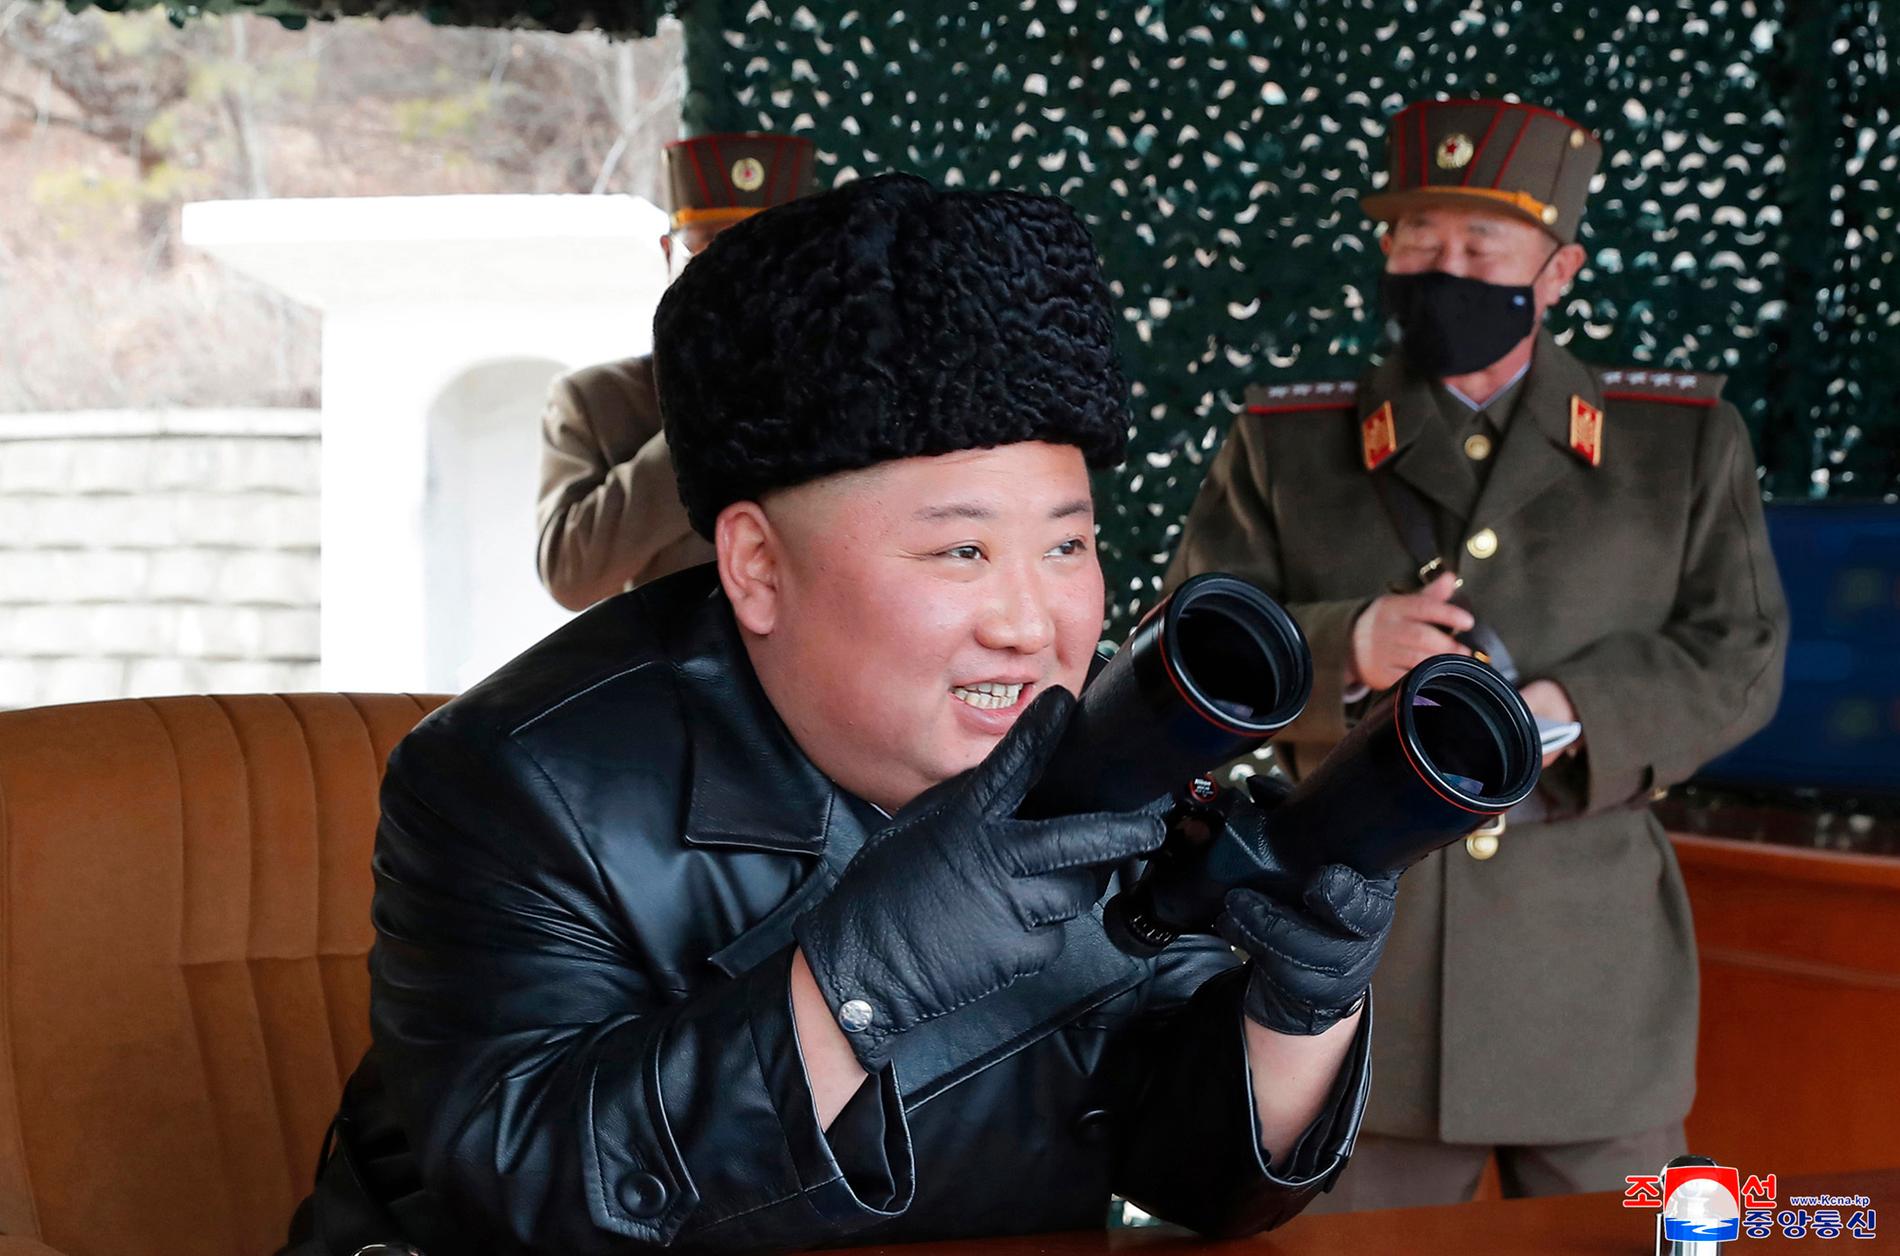 Nordkoreas diktator Kim Jong-Un närvarade vid en uppskjutning under måndagen, enligt landets statliga nyhetsbyrå KCNA.